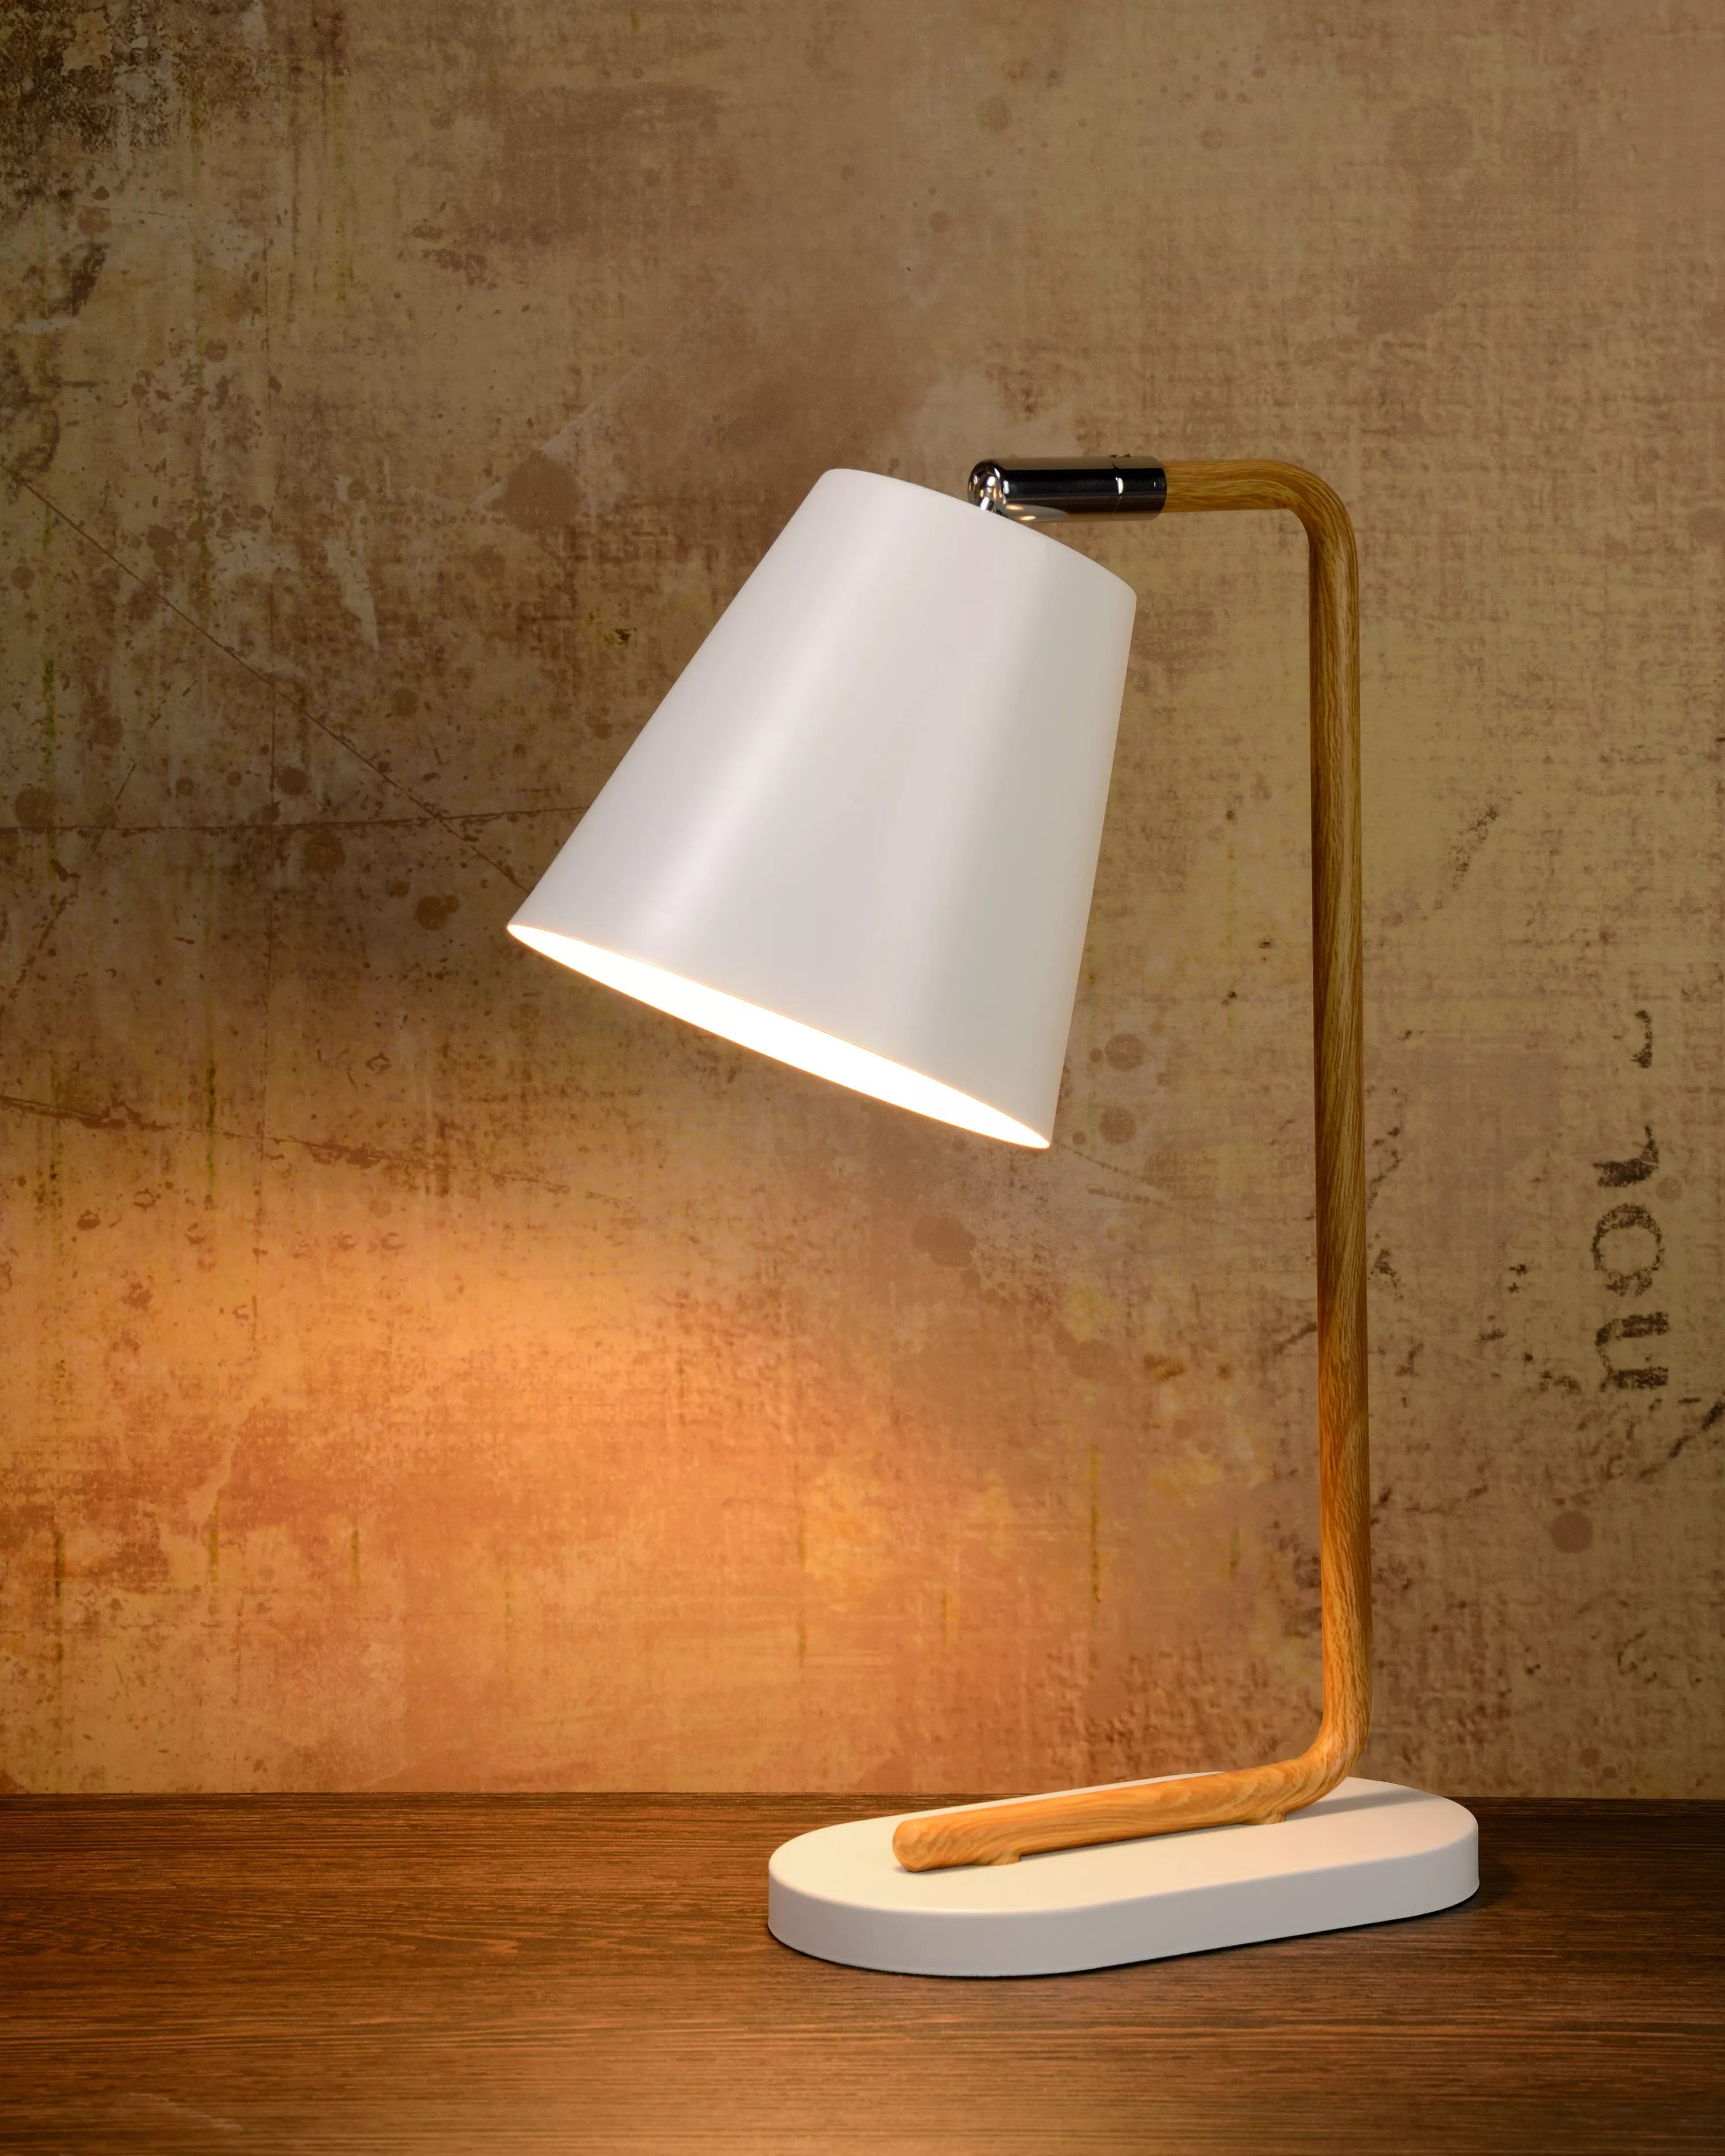 Stolní lampička Cona v bílém provedení s kovovou tyčí v motivu dřeva a s otočným kloubem pro snadné směrování stínítka.